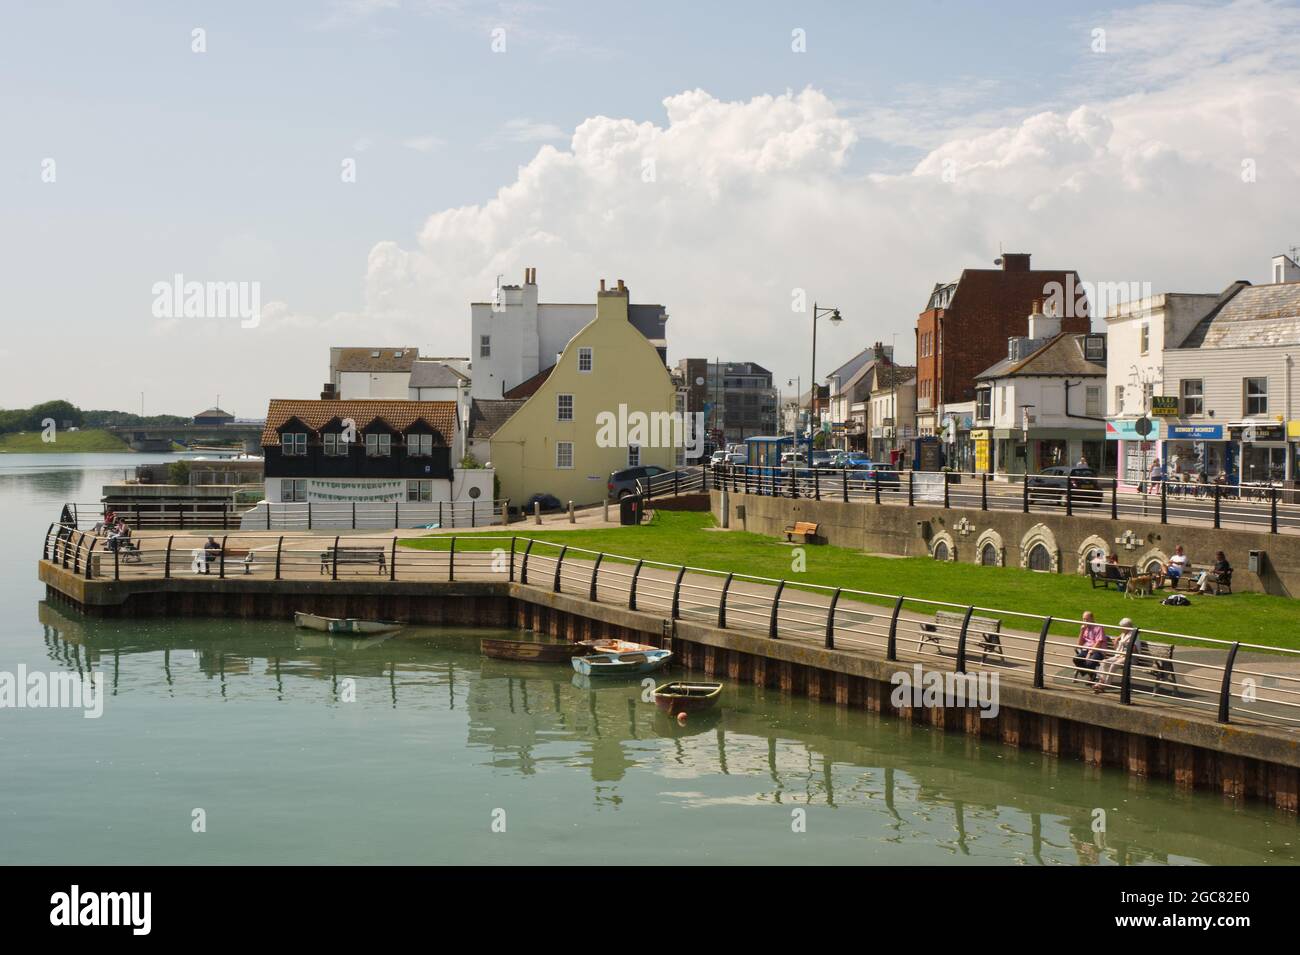 Bord de mer de la rivière Adur à Shoreham, West Sussex, Angleterre avec des gens sur la promenade et la rue. Banque D'Images